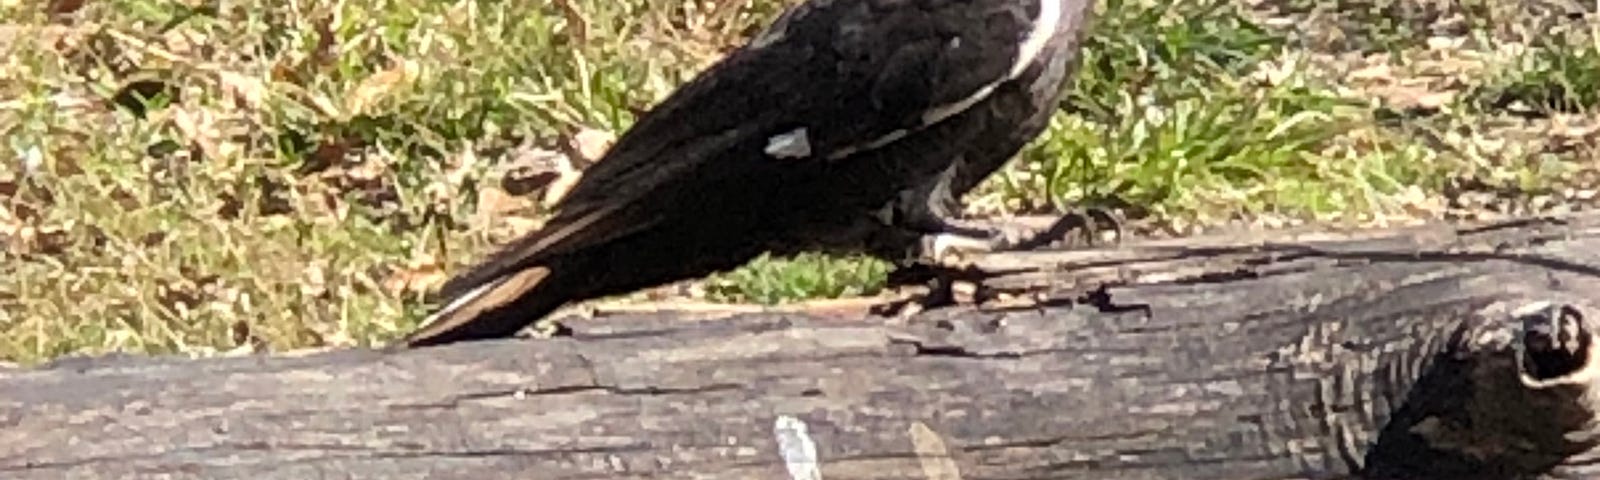 Pileated woodpecker sitting on a fallen tree